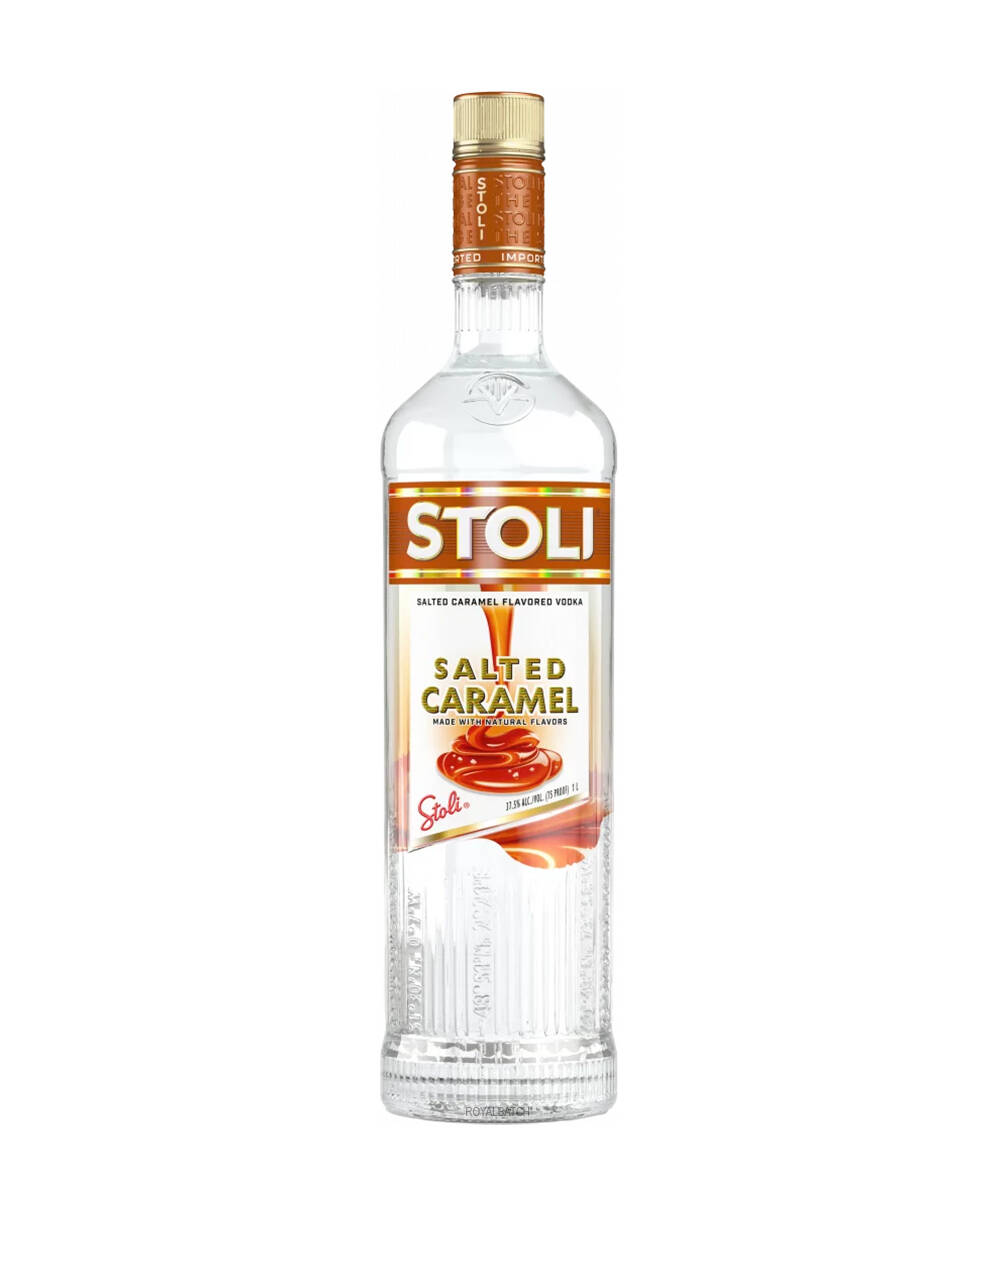 Stoli Salted Caramel Flavored Vodka